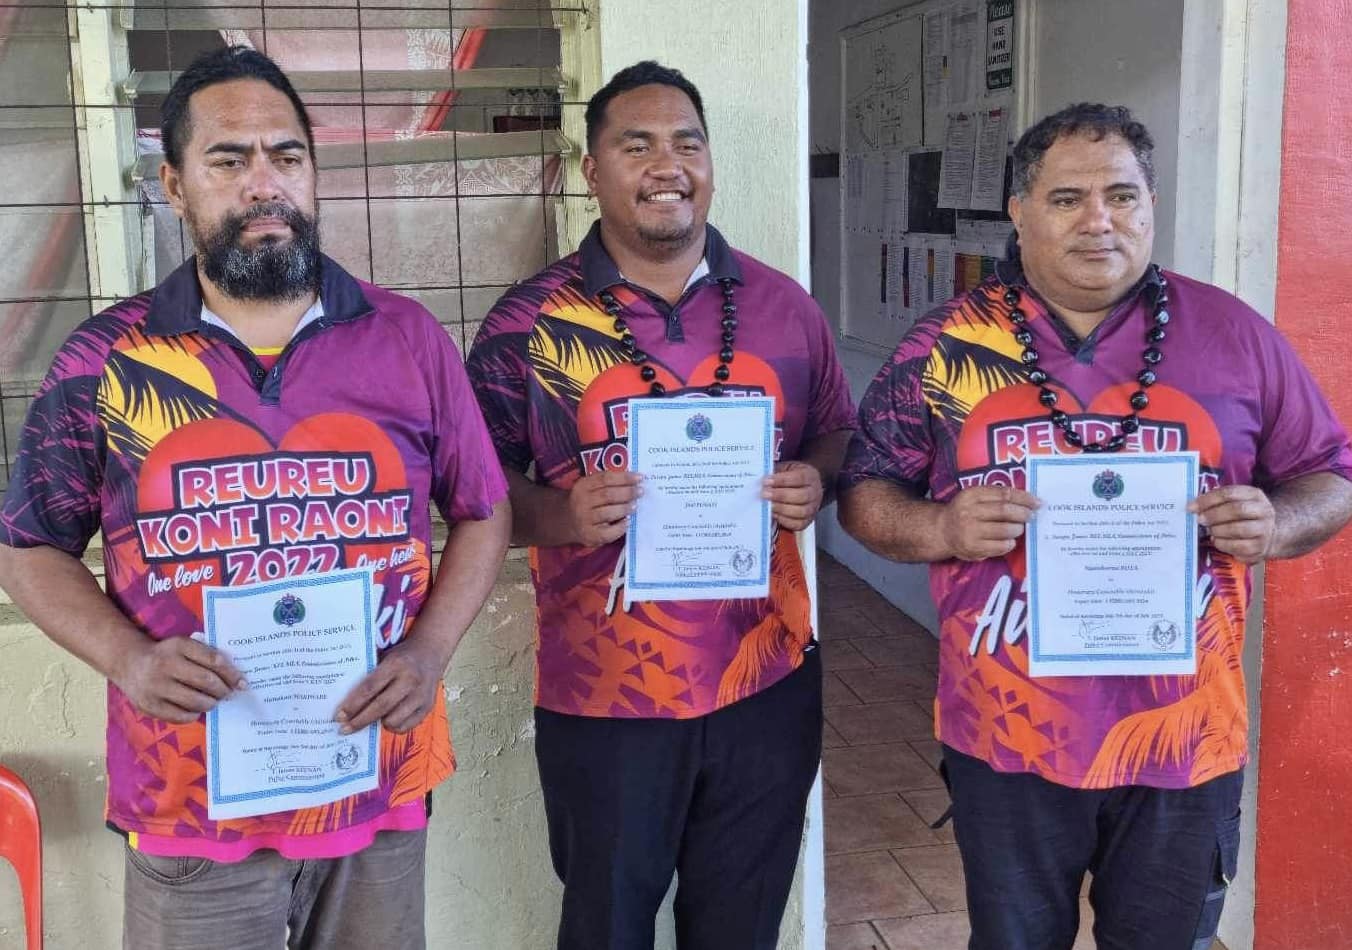 Aitutaki taskforce members receive warrants